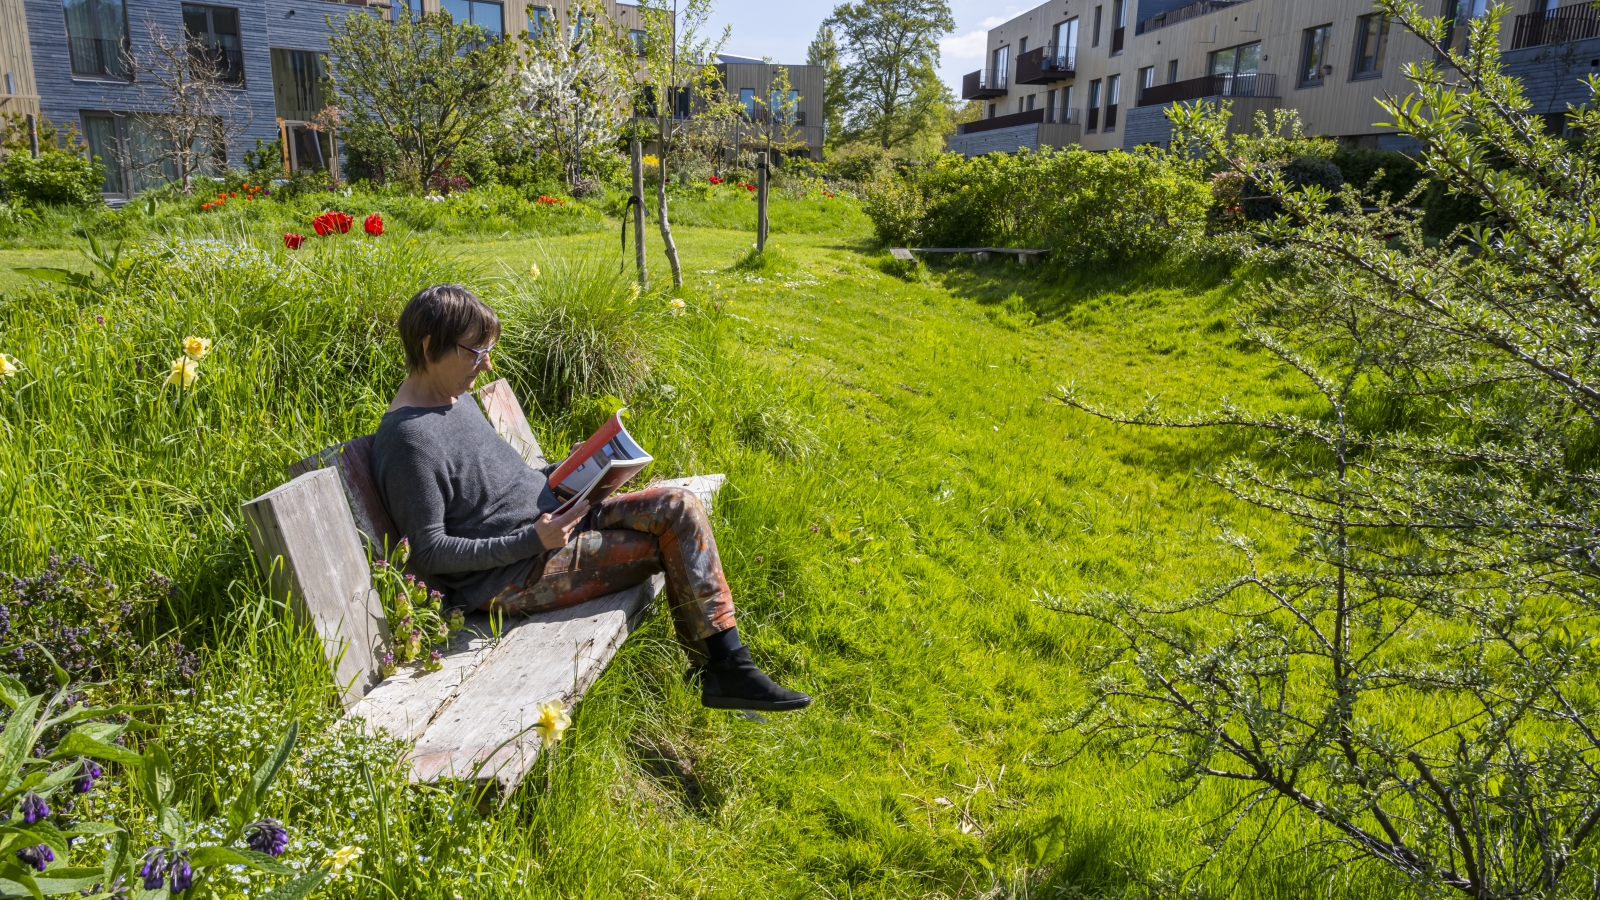 Een persoon zit op een bankje in het groen en leest een boek, eromheen zijn gebouwen te zien, ze zit in een binnentuin